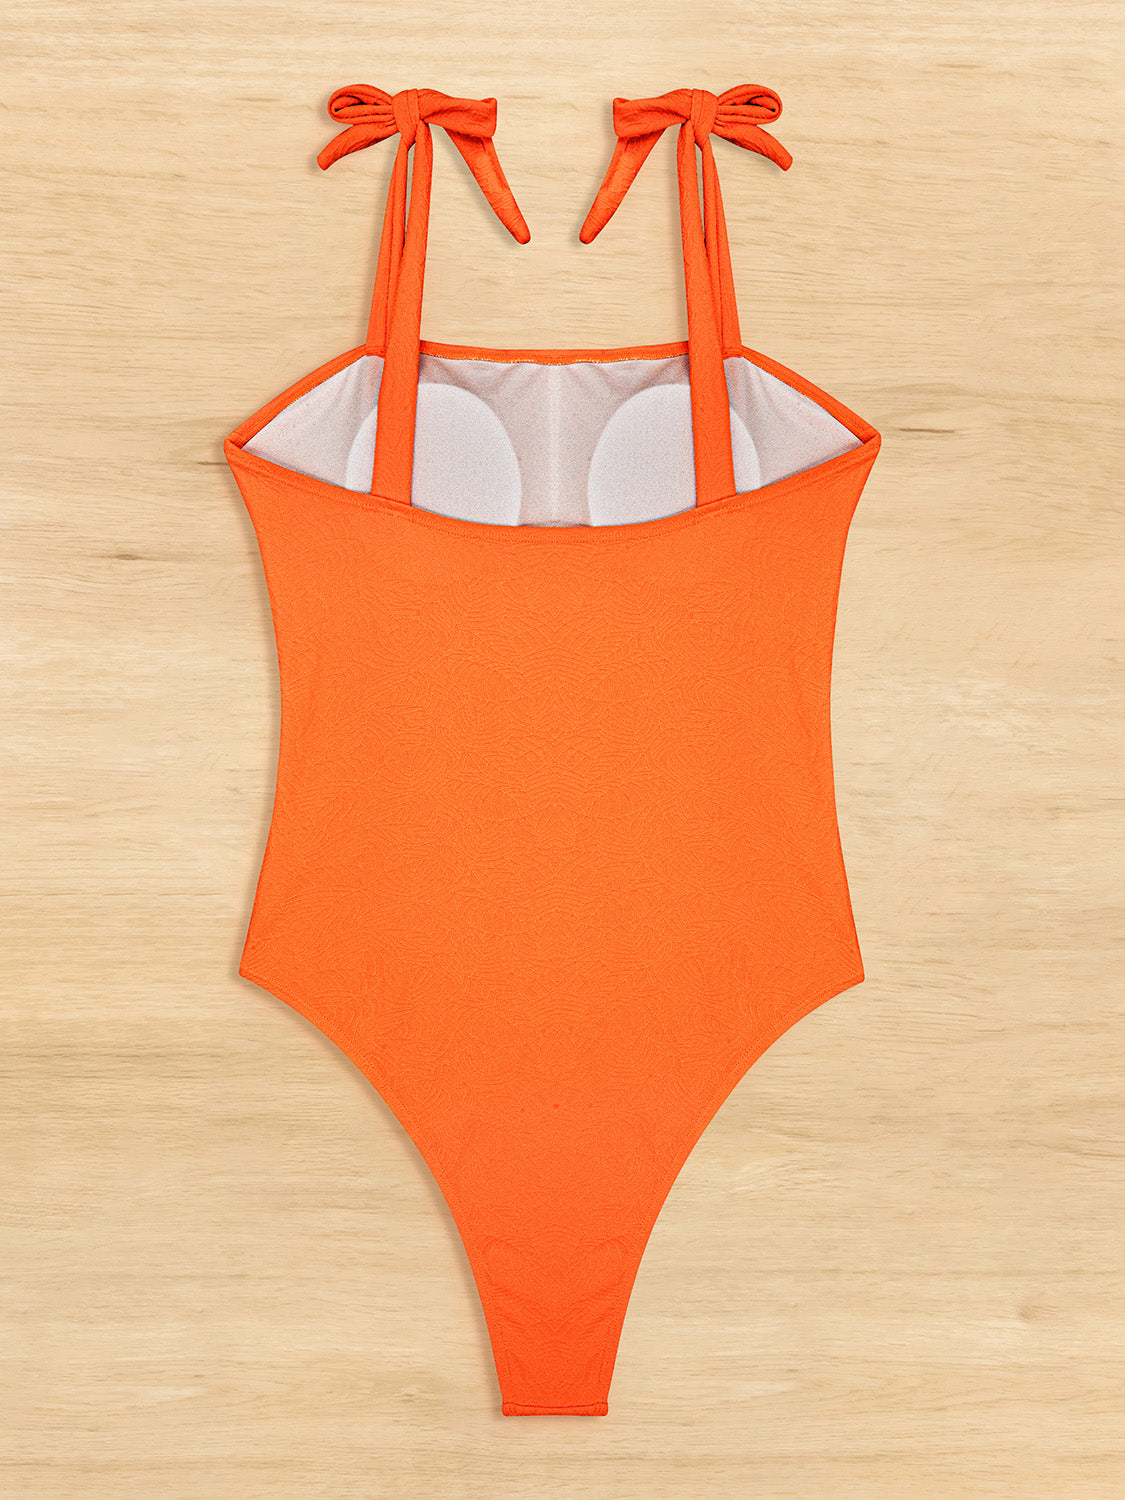 TEEK - Tied Top Wide Strap Swimsuit SWIMWEAR TEEK Trend   